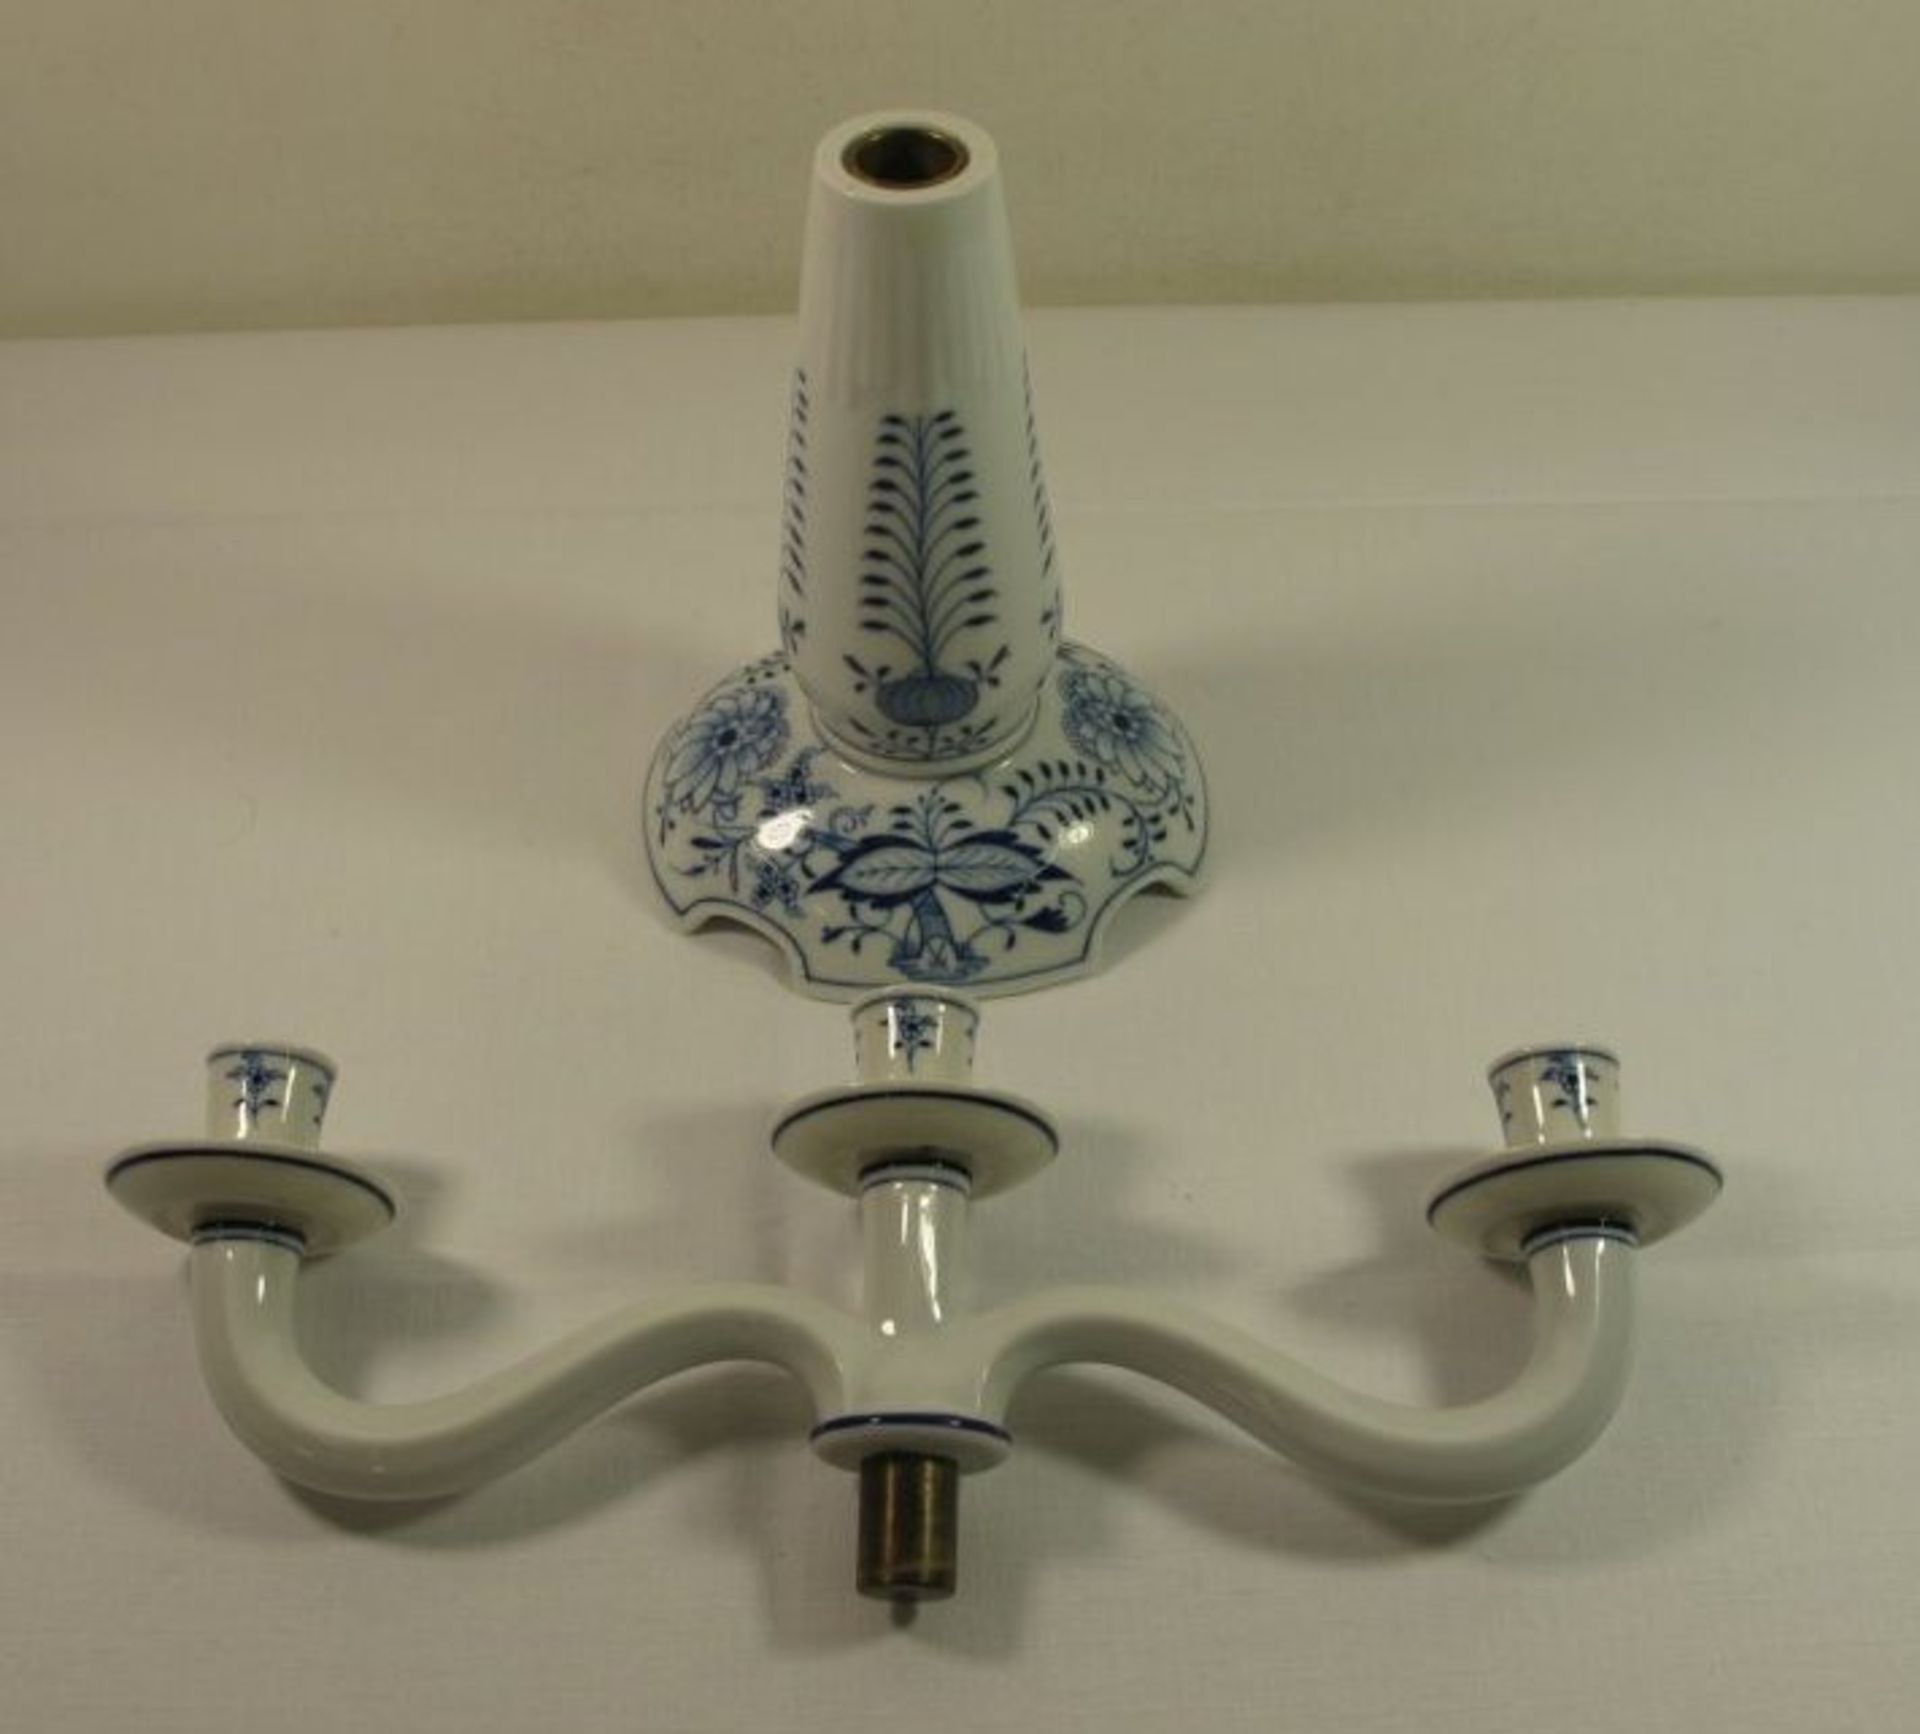 3flammiger Leuchter "Meissen", Schwertermarke, Zwiebelmuster, Stand geklebt, H-28cm B-33cm. - Bild 2 aus 3